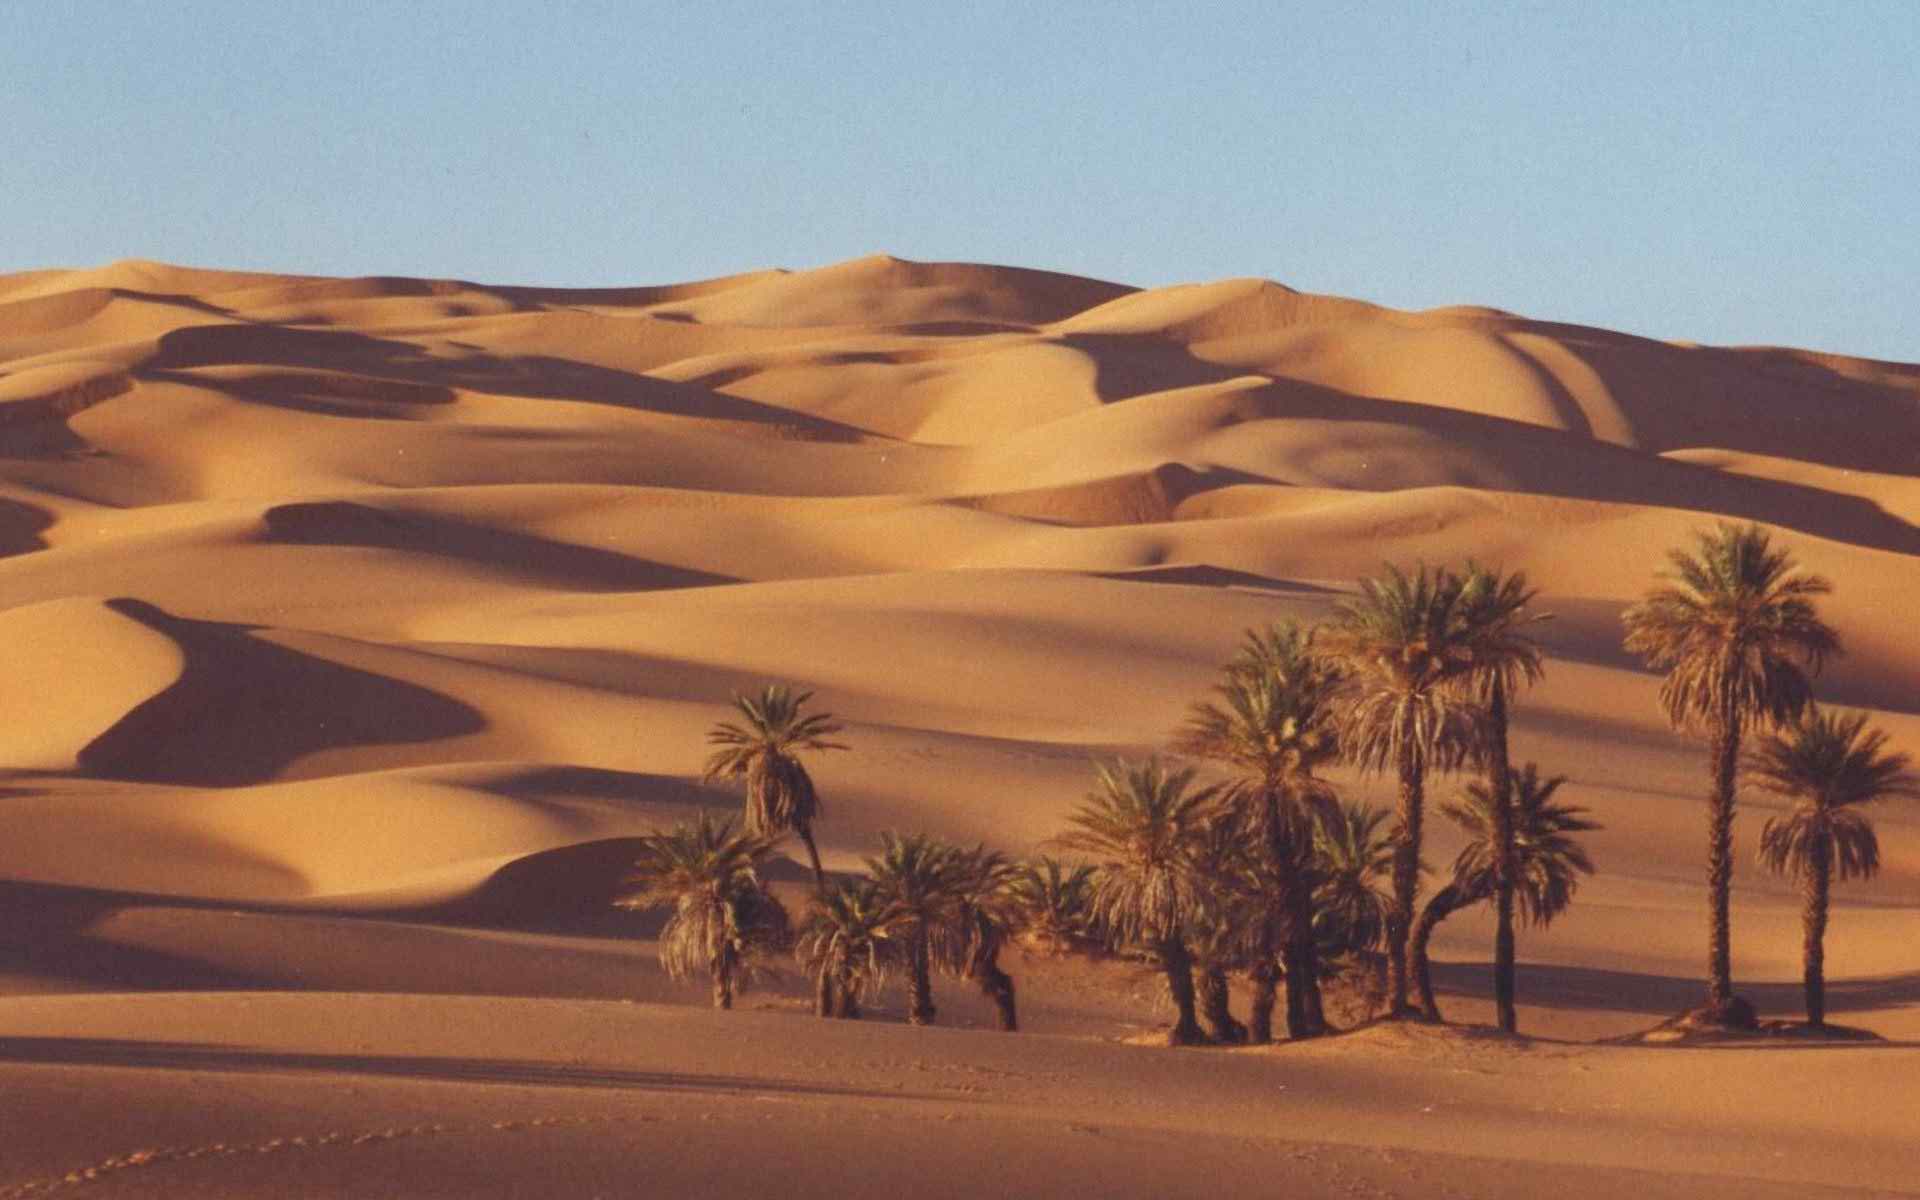 immagini da parati hd,deserto,erg,sahara,sabbia,duna